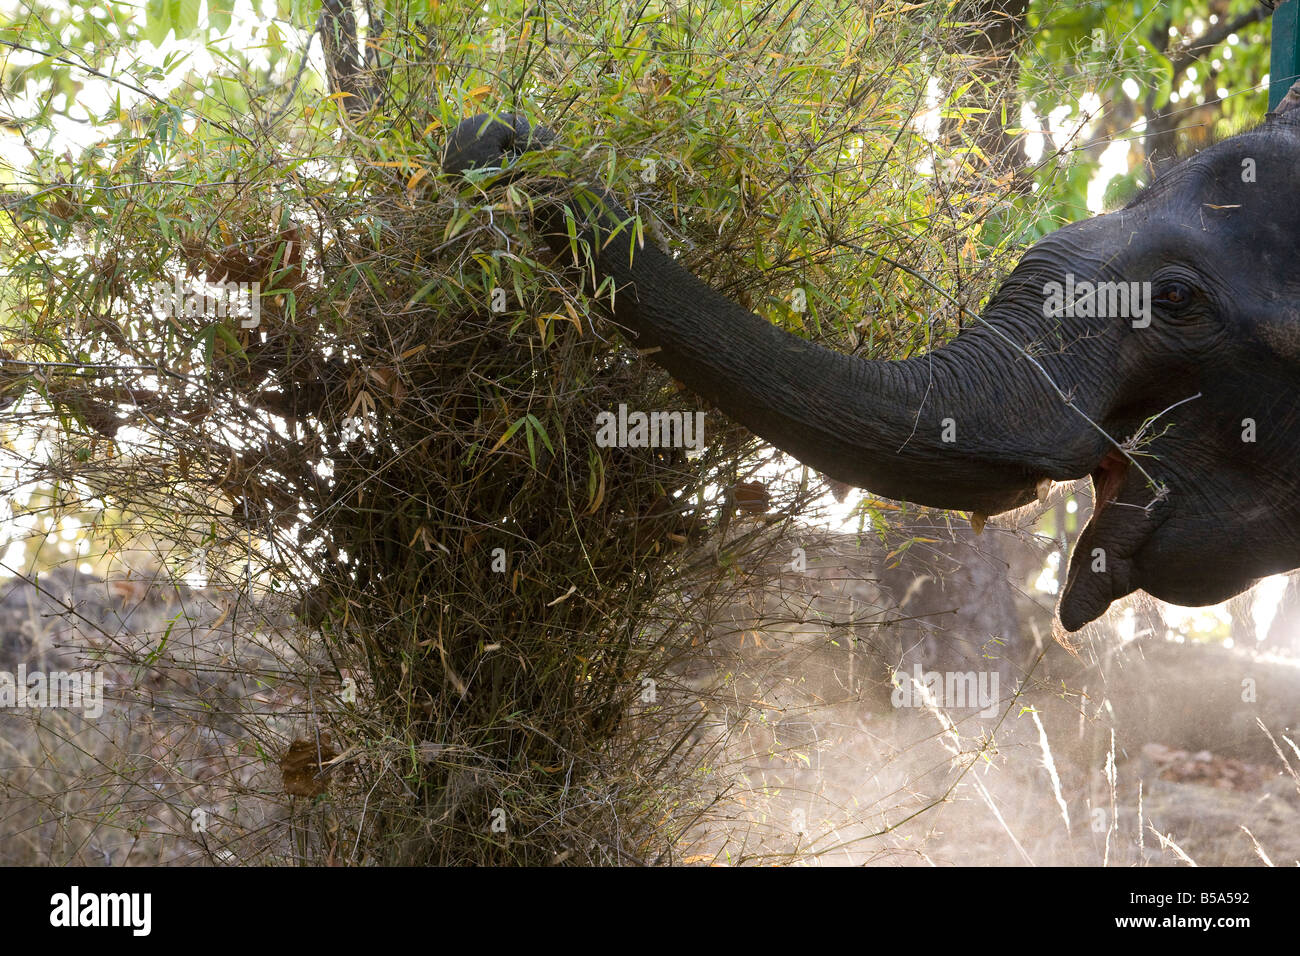 L'éléphant indien (Elephus maximus) alimentation, Bandhavgarh Parc National, l'état de Madhya Pradesh, Inde Banque D'Images